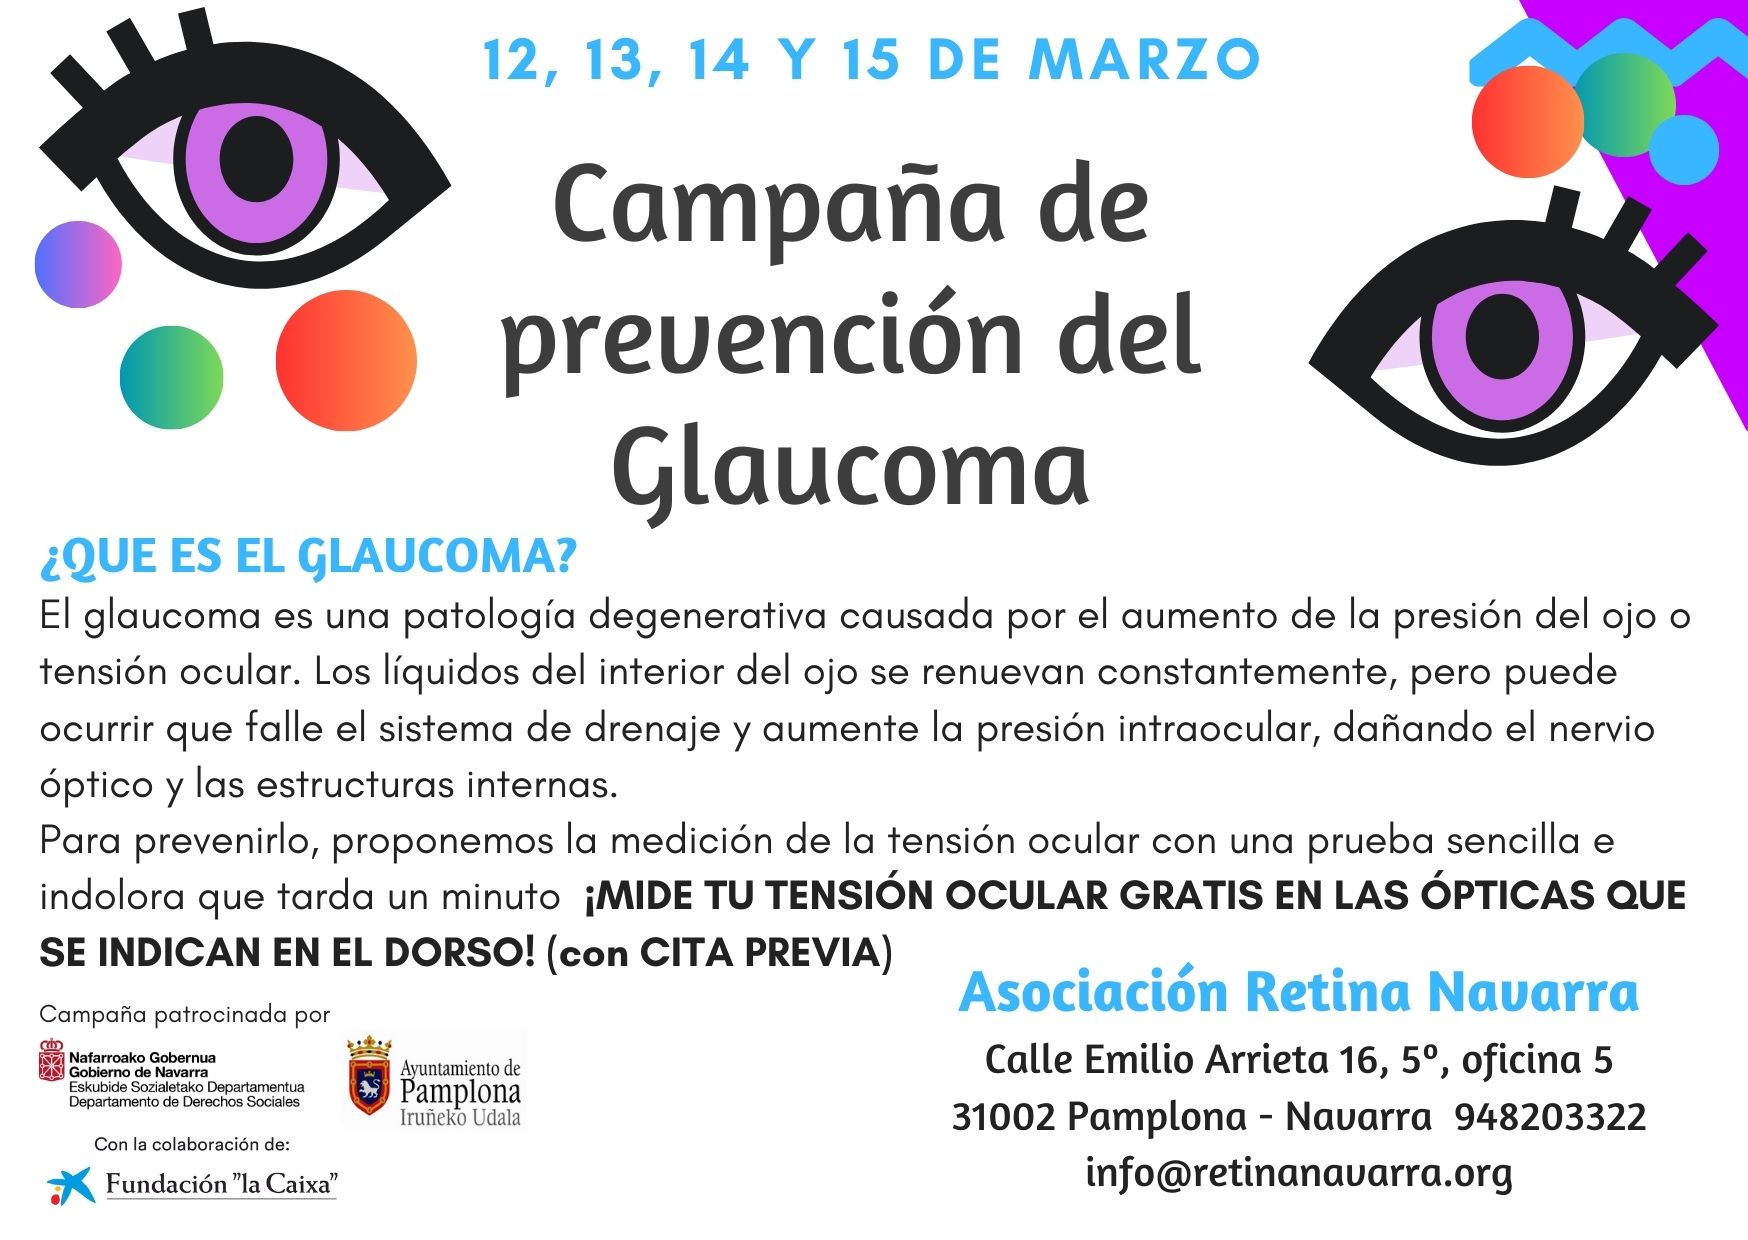 Cartel de campaña de prevención del glaucoma por Retina Navarra que tiene lugar del 12 al 15 de marzo en algunas ópticas navarras